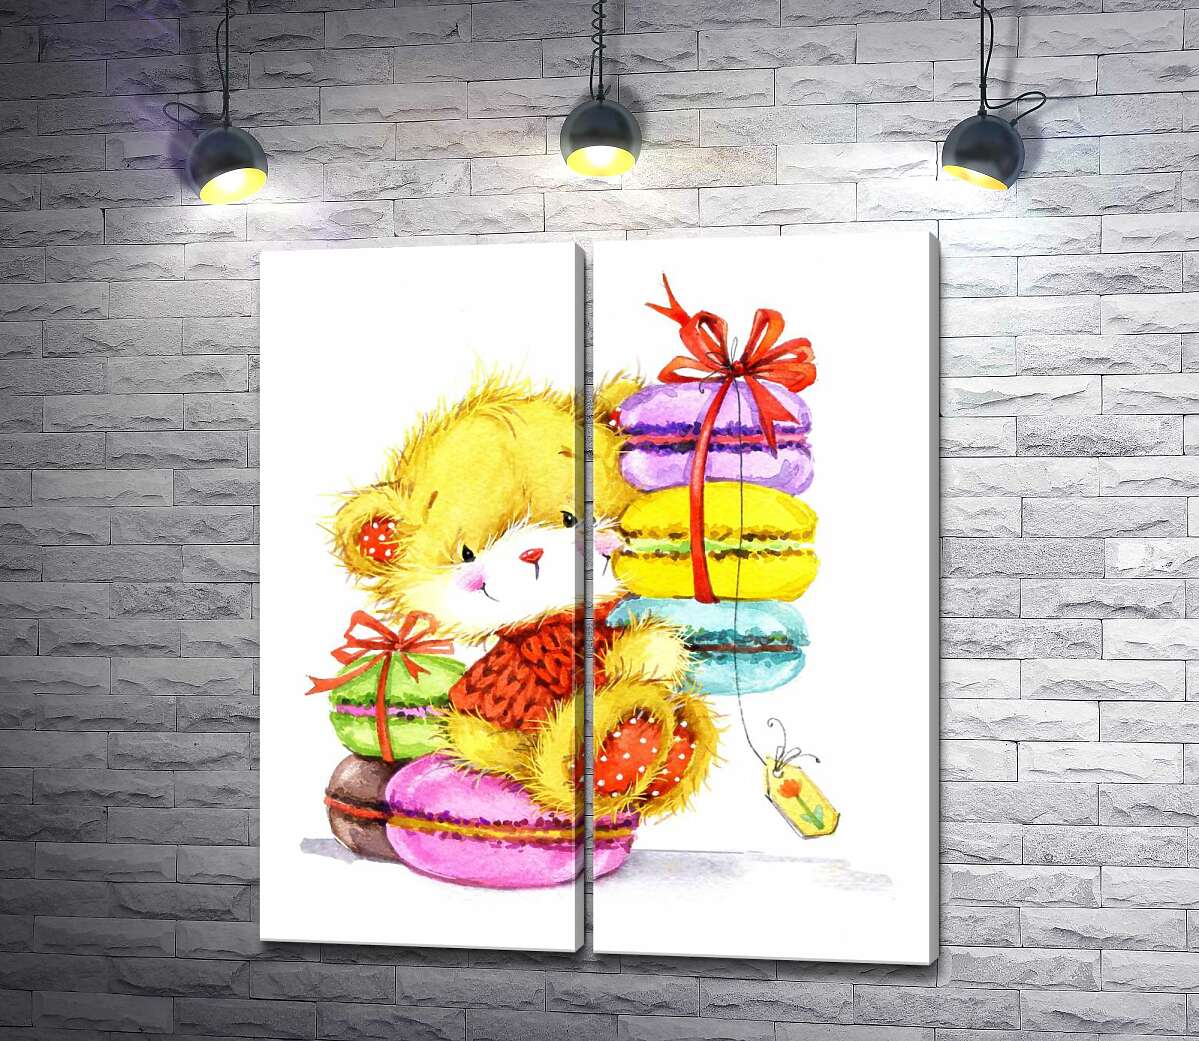 модульная картина Пушистый медведь среди цветного разнообразия пирожных макаронов